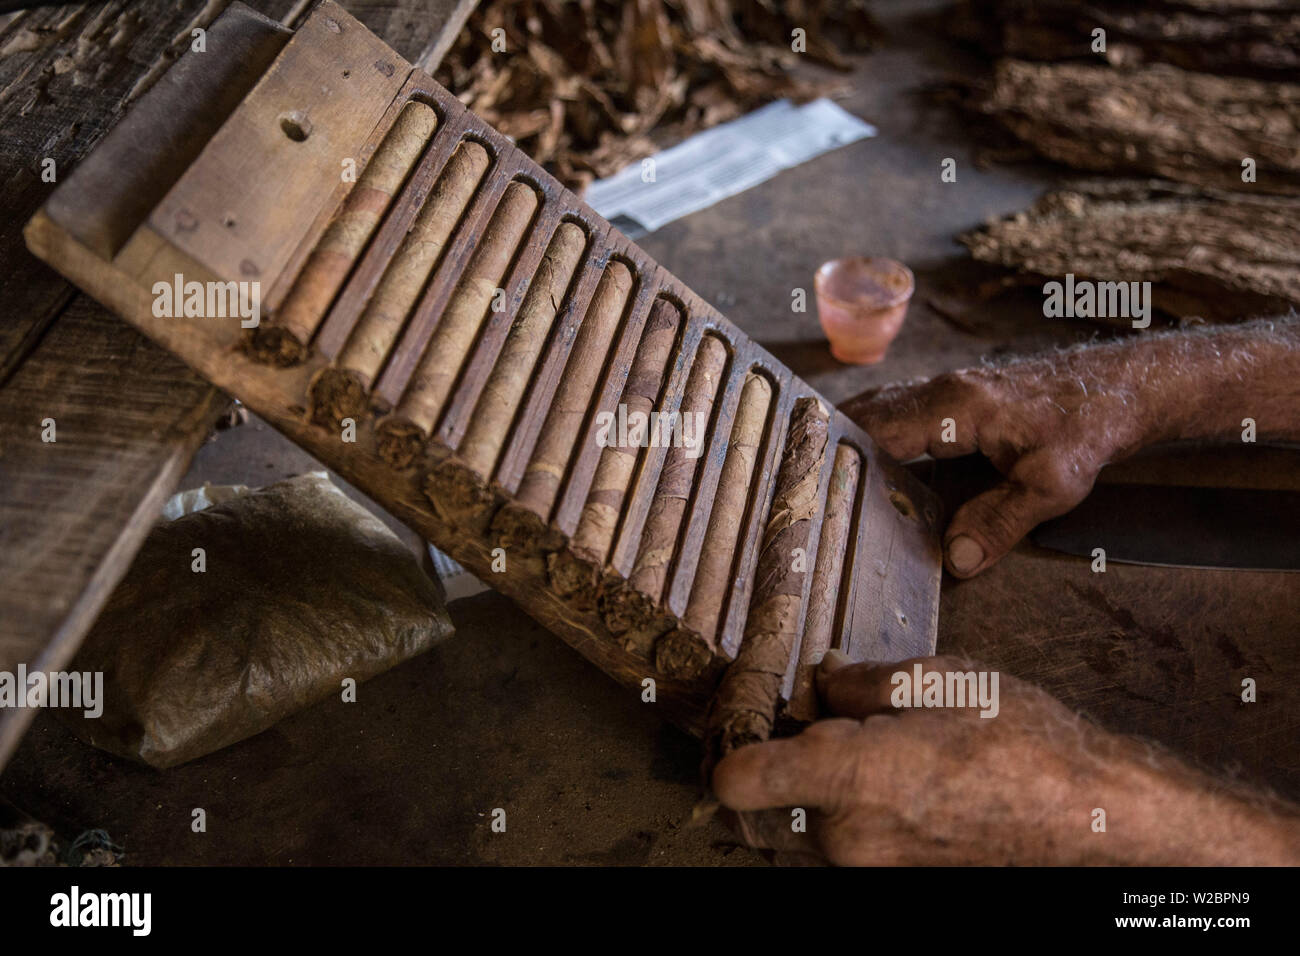 Rouler des cigares à l'Alejandro Robaina plantation de tabac, province de Pinar del Rio, Cuba Banque D'Images